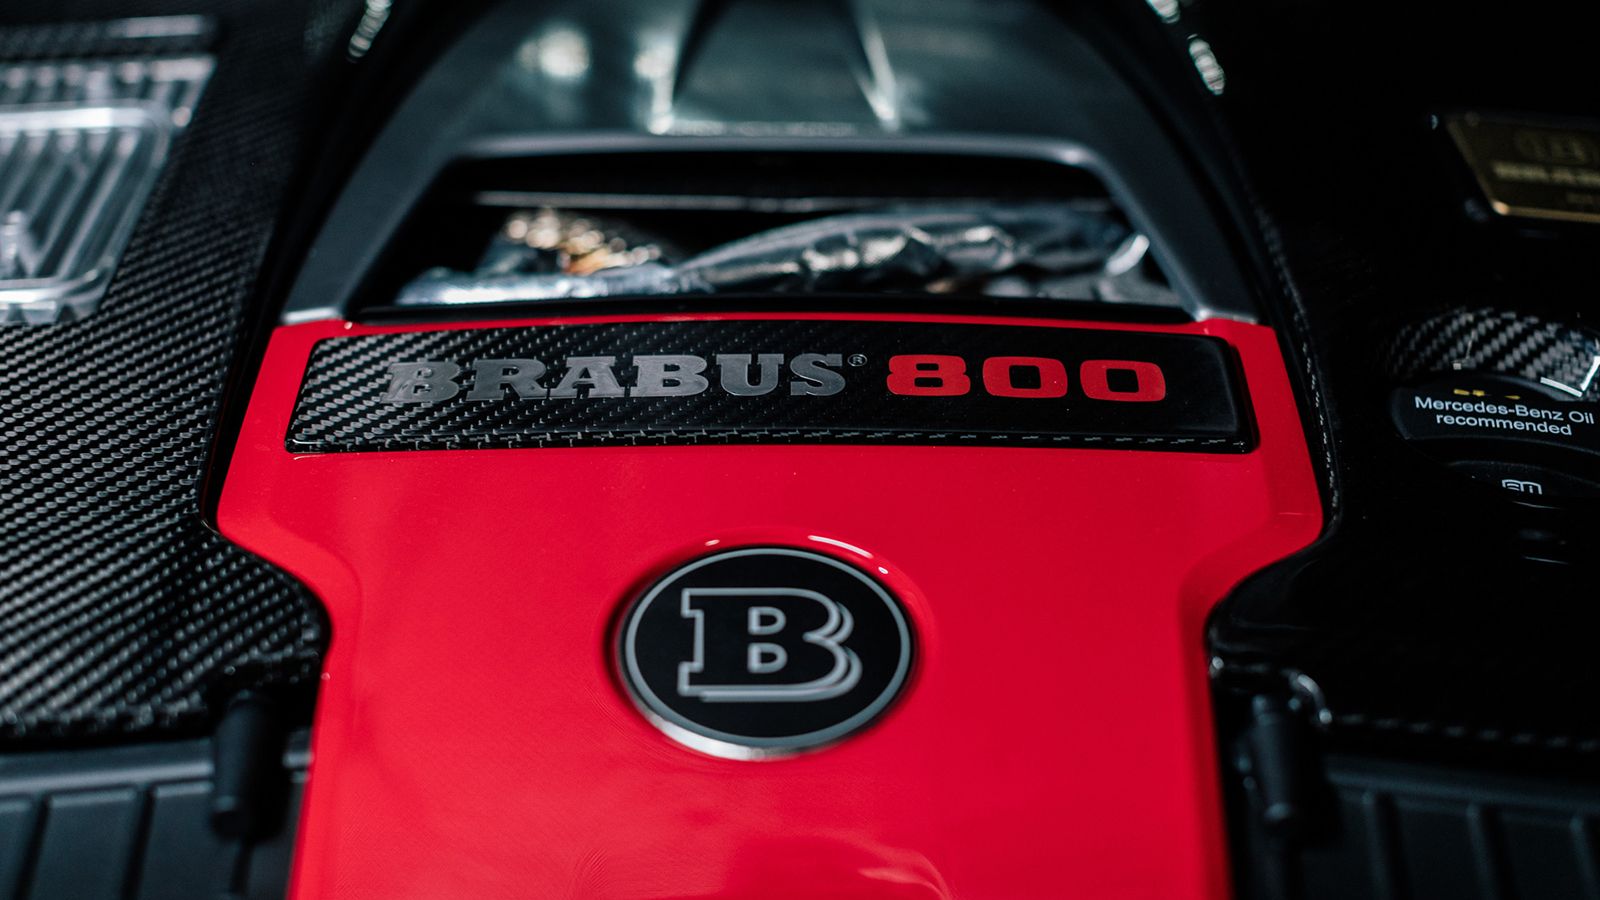 Το κιτ αναβάθμισης της BRABUS ανέβασε την ισχύ του 4λιτρου κινητήρα της AMG κατά 225 ίππους και τη ροπή κατά 150 Nm.